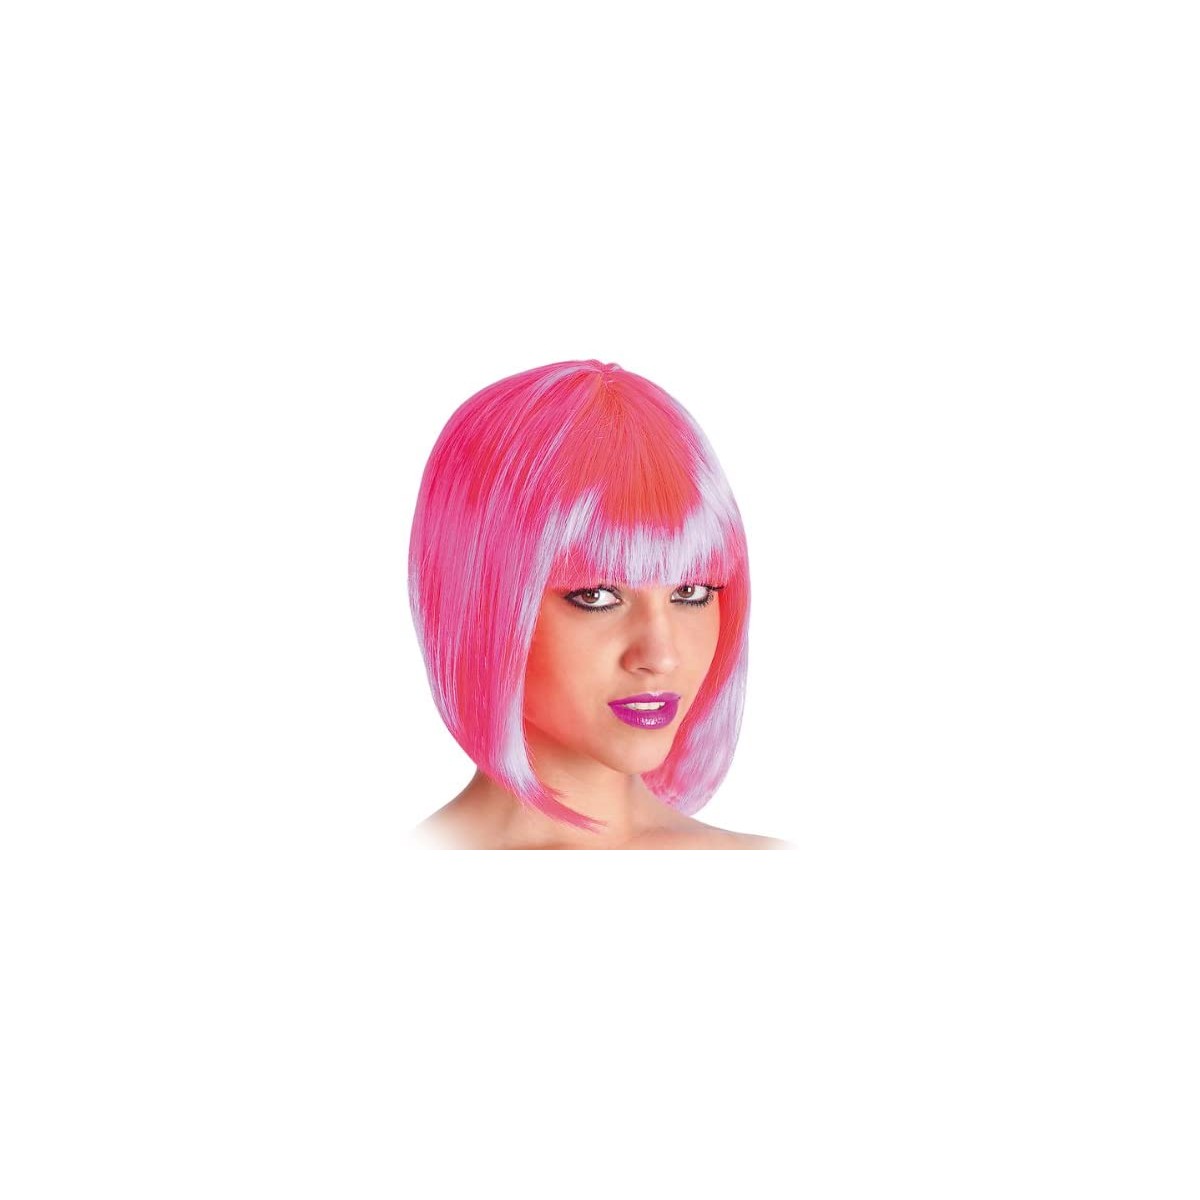 Parrucca rosa da Pin Up con frangetta, travestimento anni 50